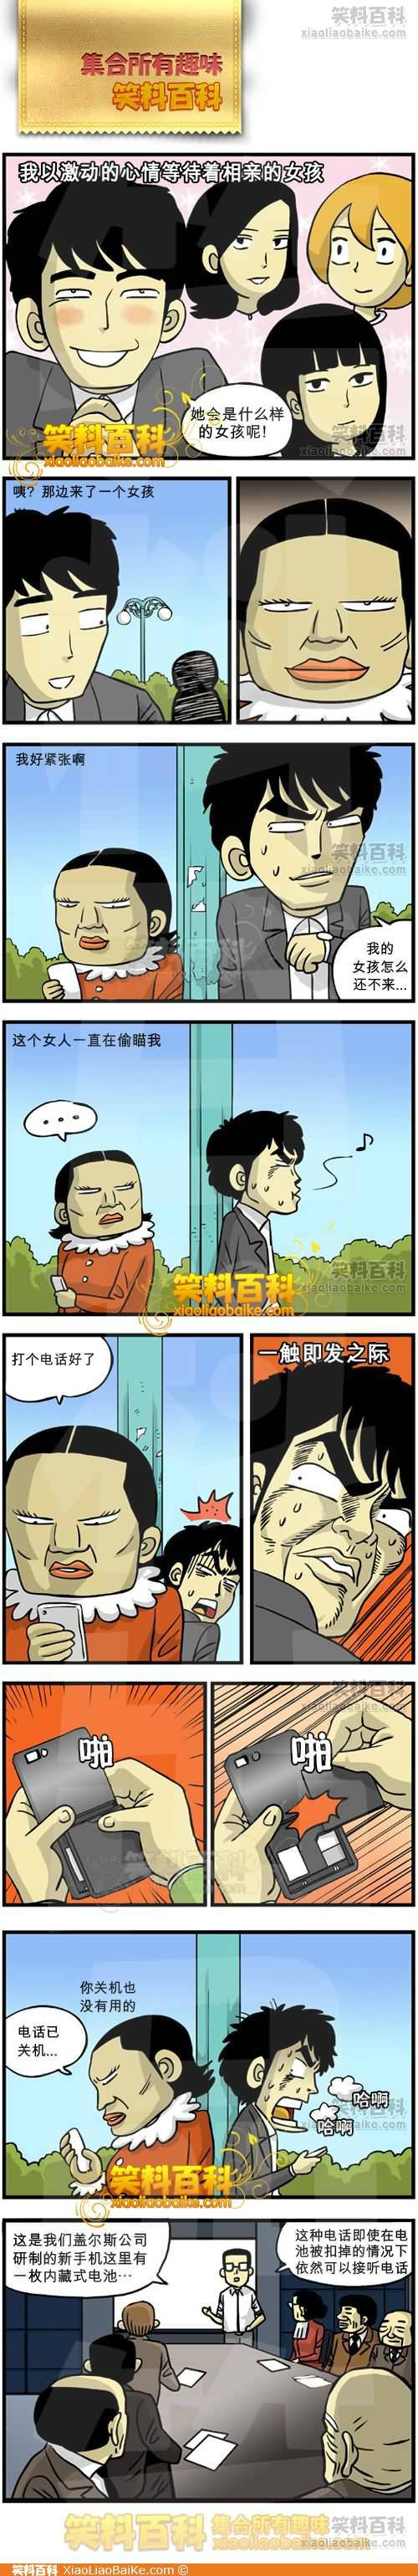 邪恶漫画爆笑囧图第266刊：电车之狼的悲剧